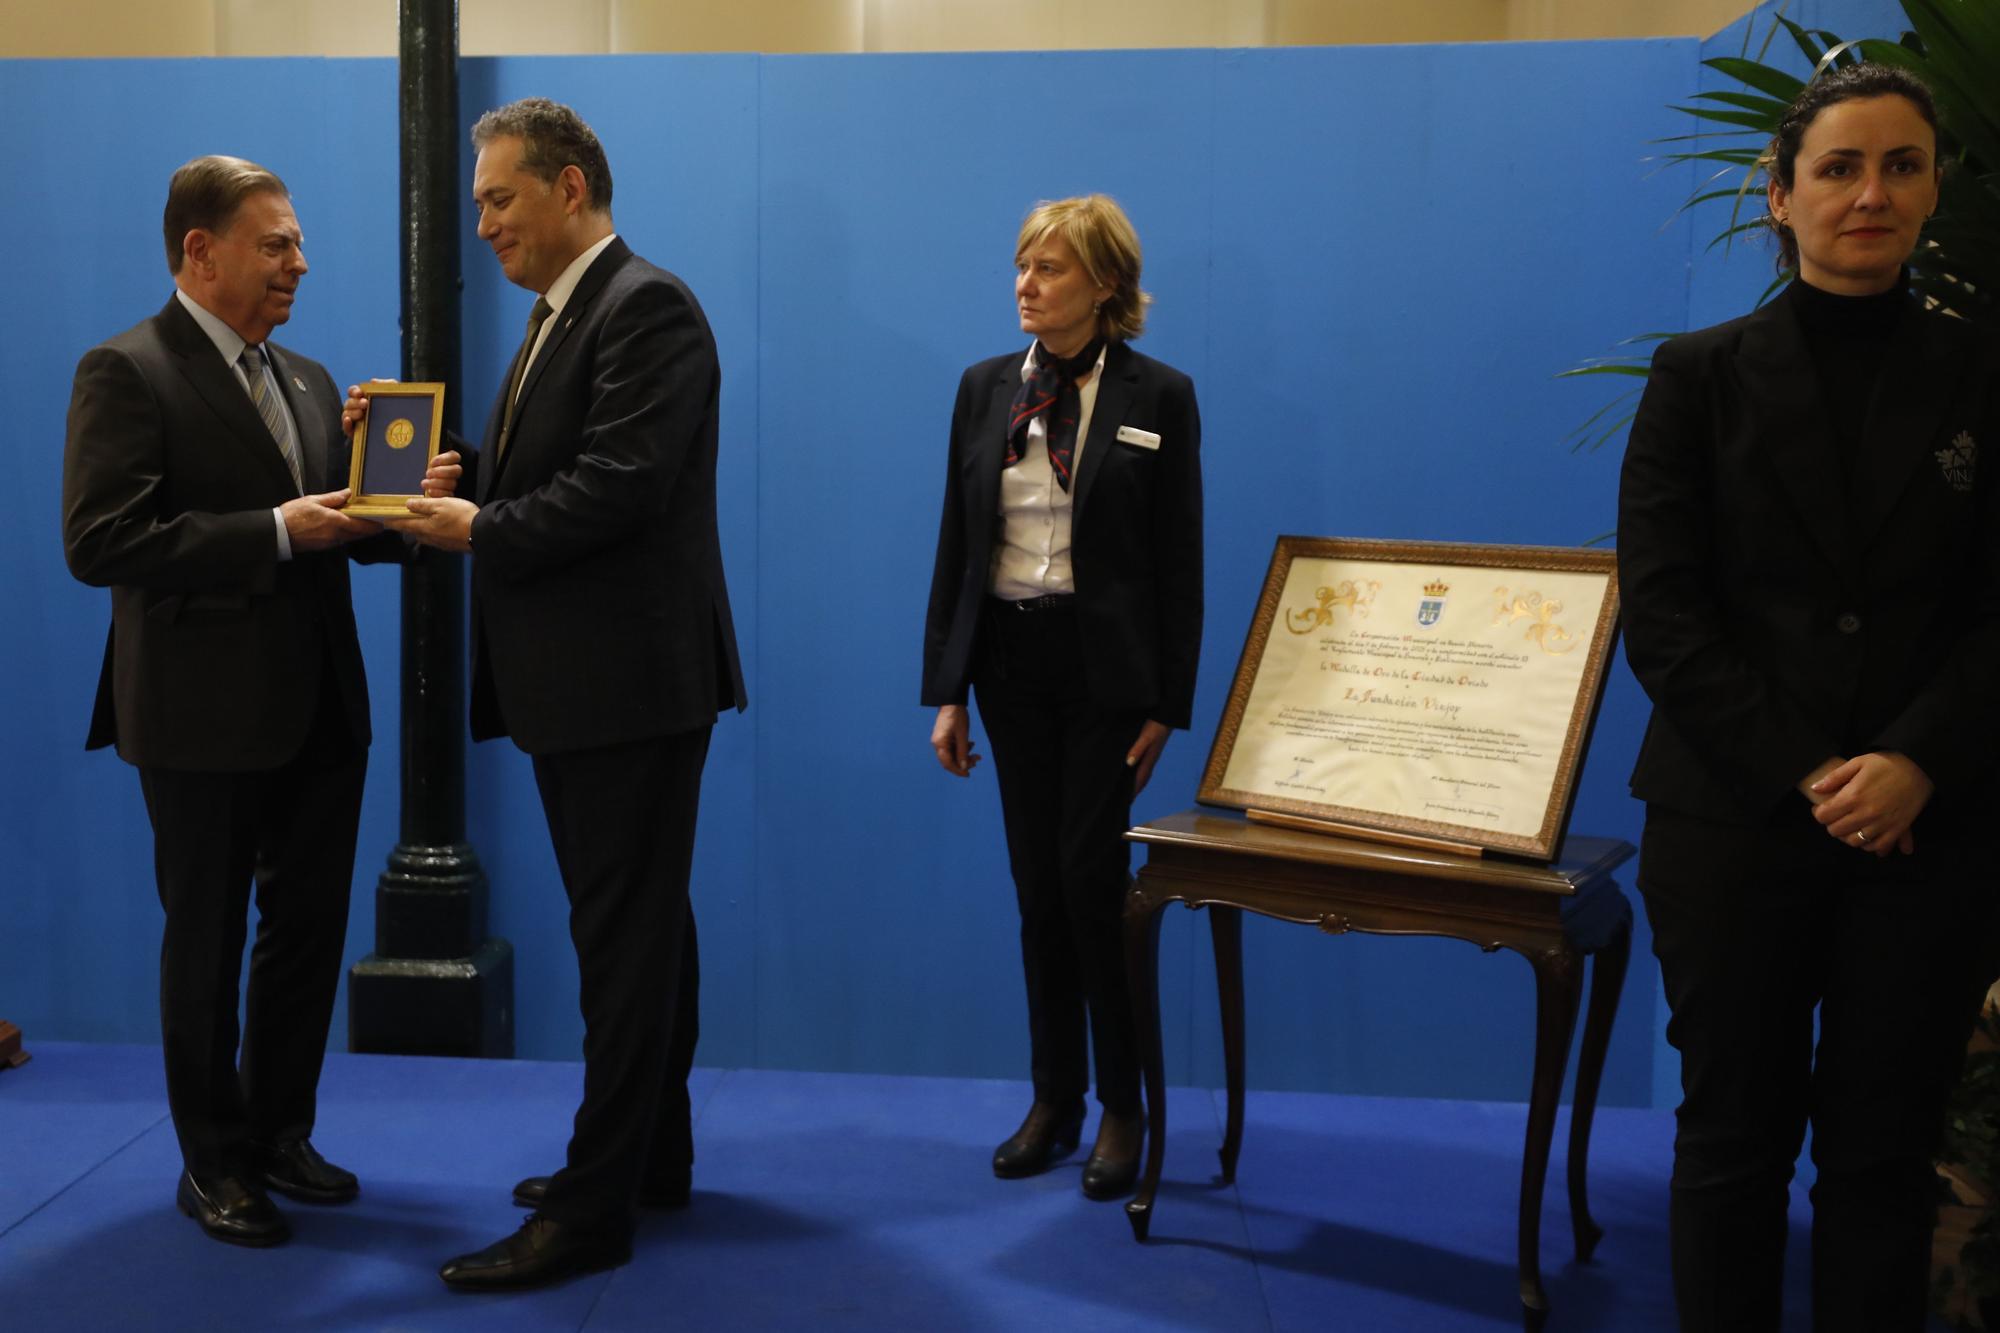 La Fundación Vinjoy, Medalla de Oro de Oviedo por su "compromiso, dignidad y justicia"